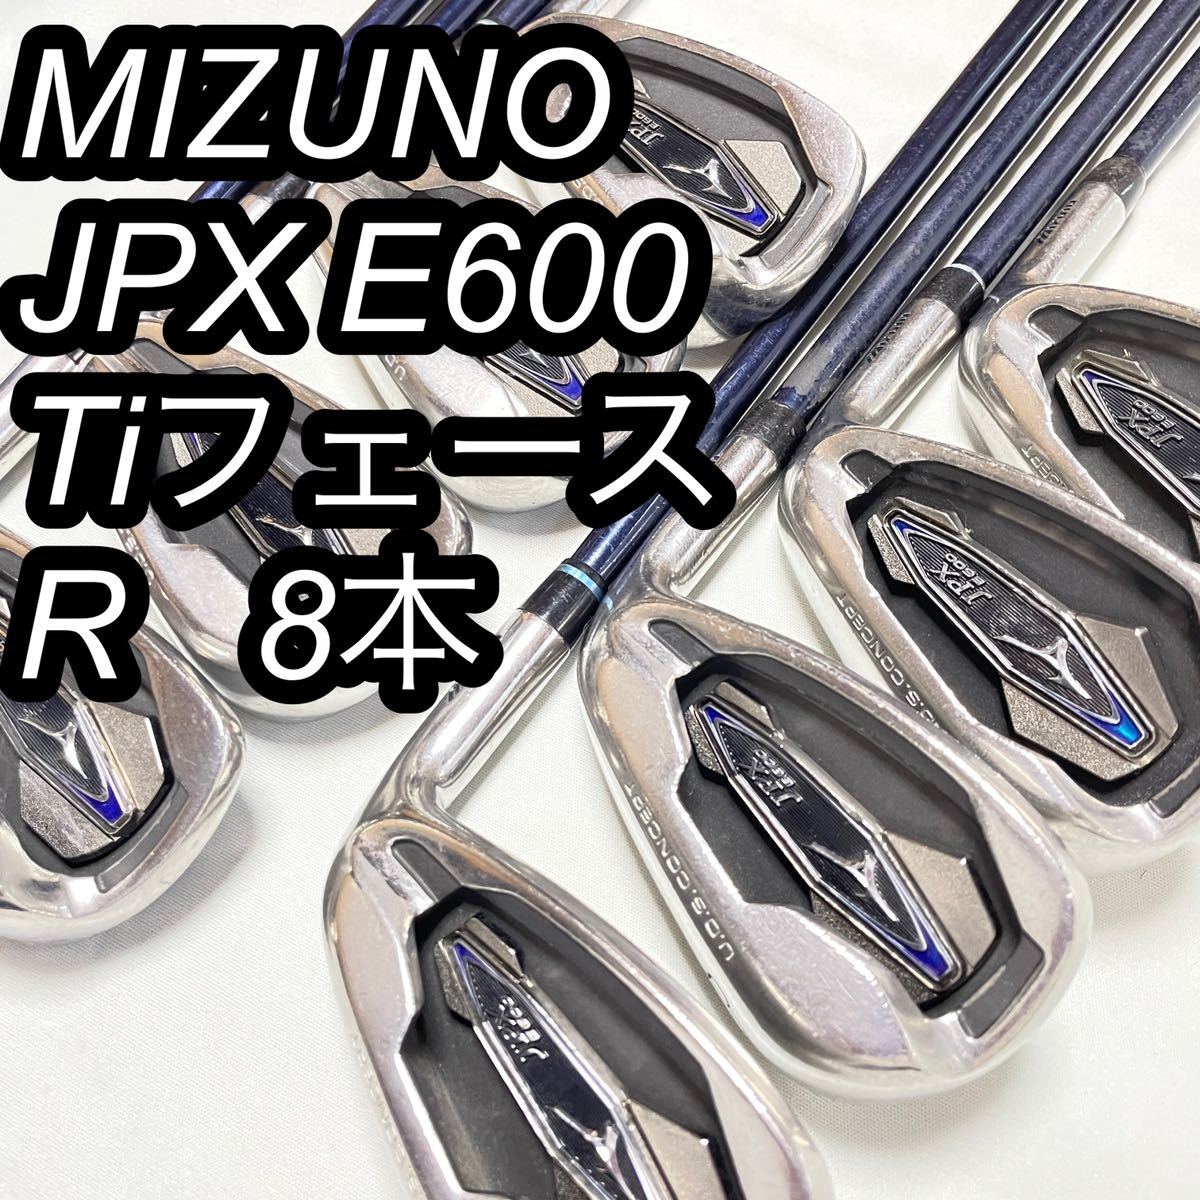 MIZUNO ミズノ JPX E600 Tiフェース R 純正 カーボン 8本 bprsubang.com